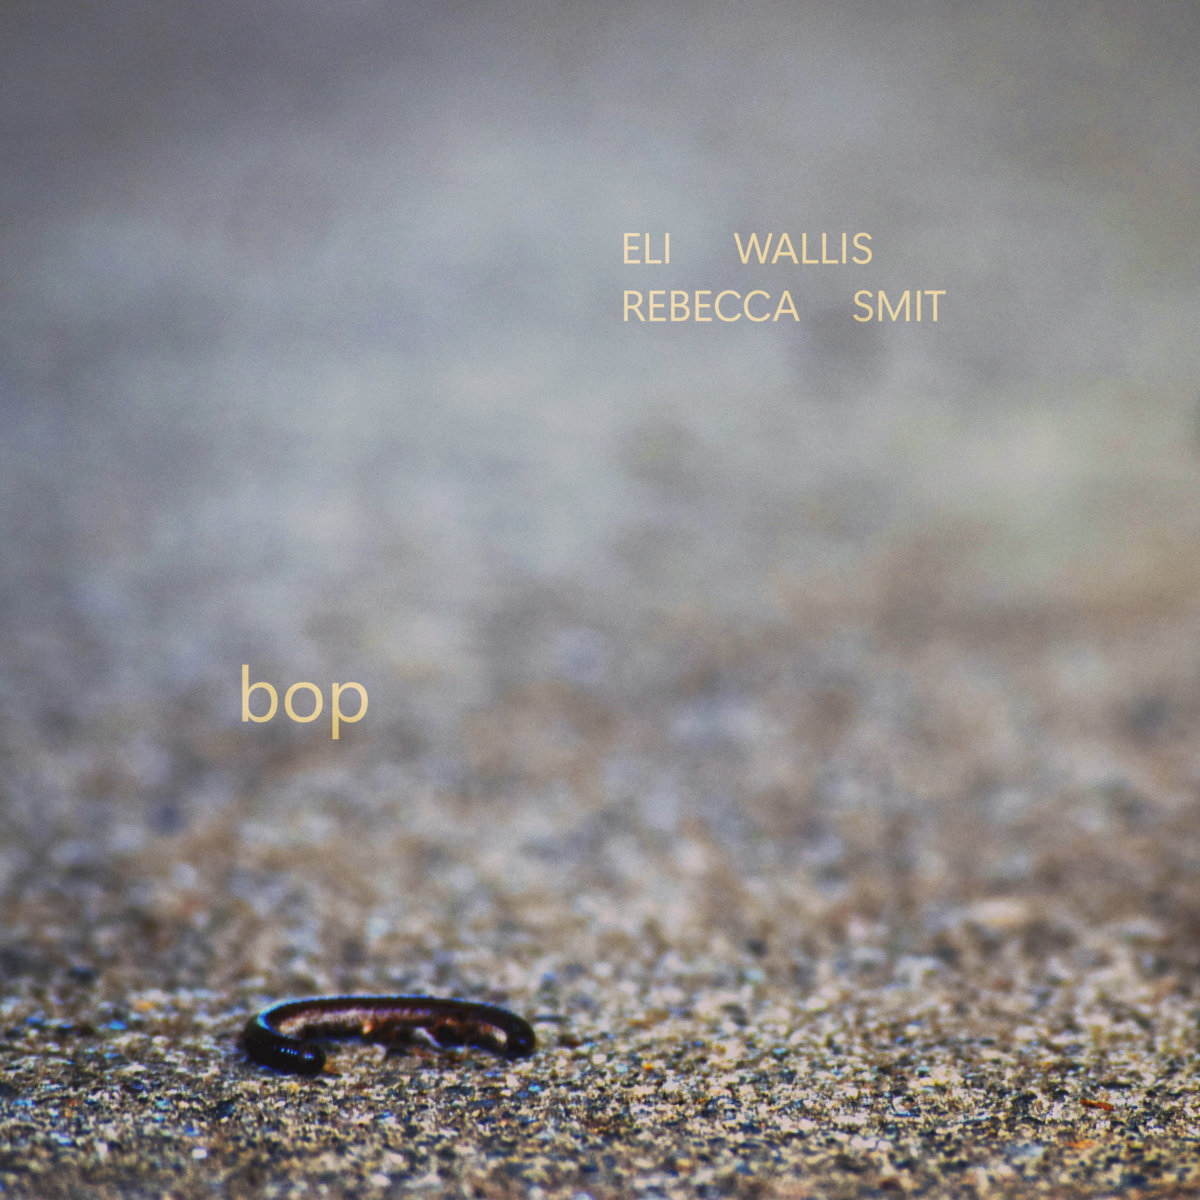 Eli Wallis – bop